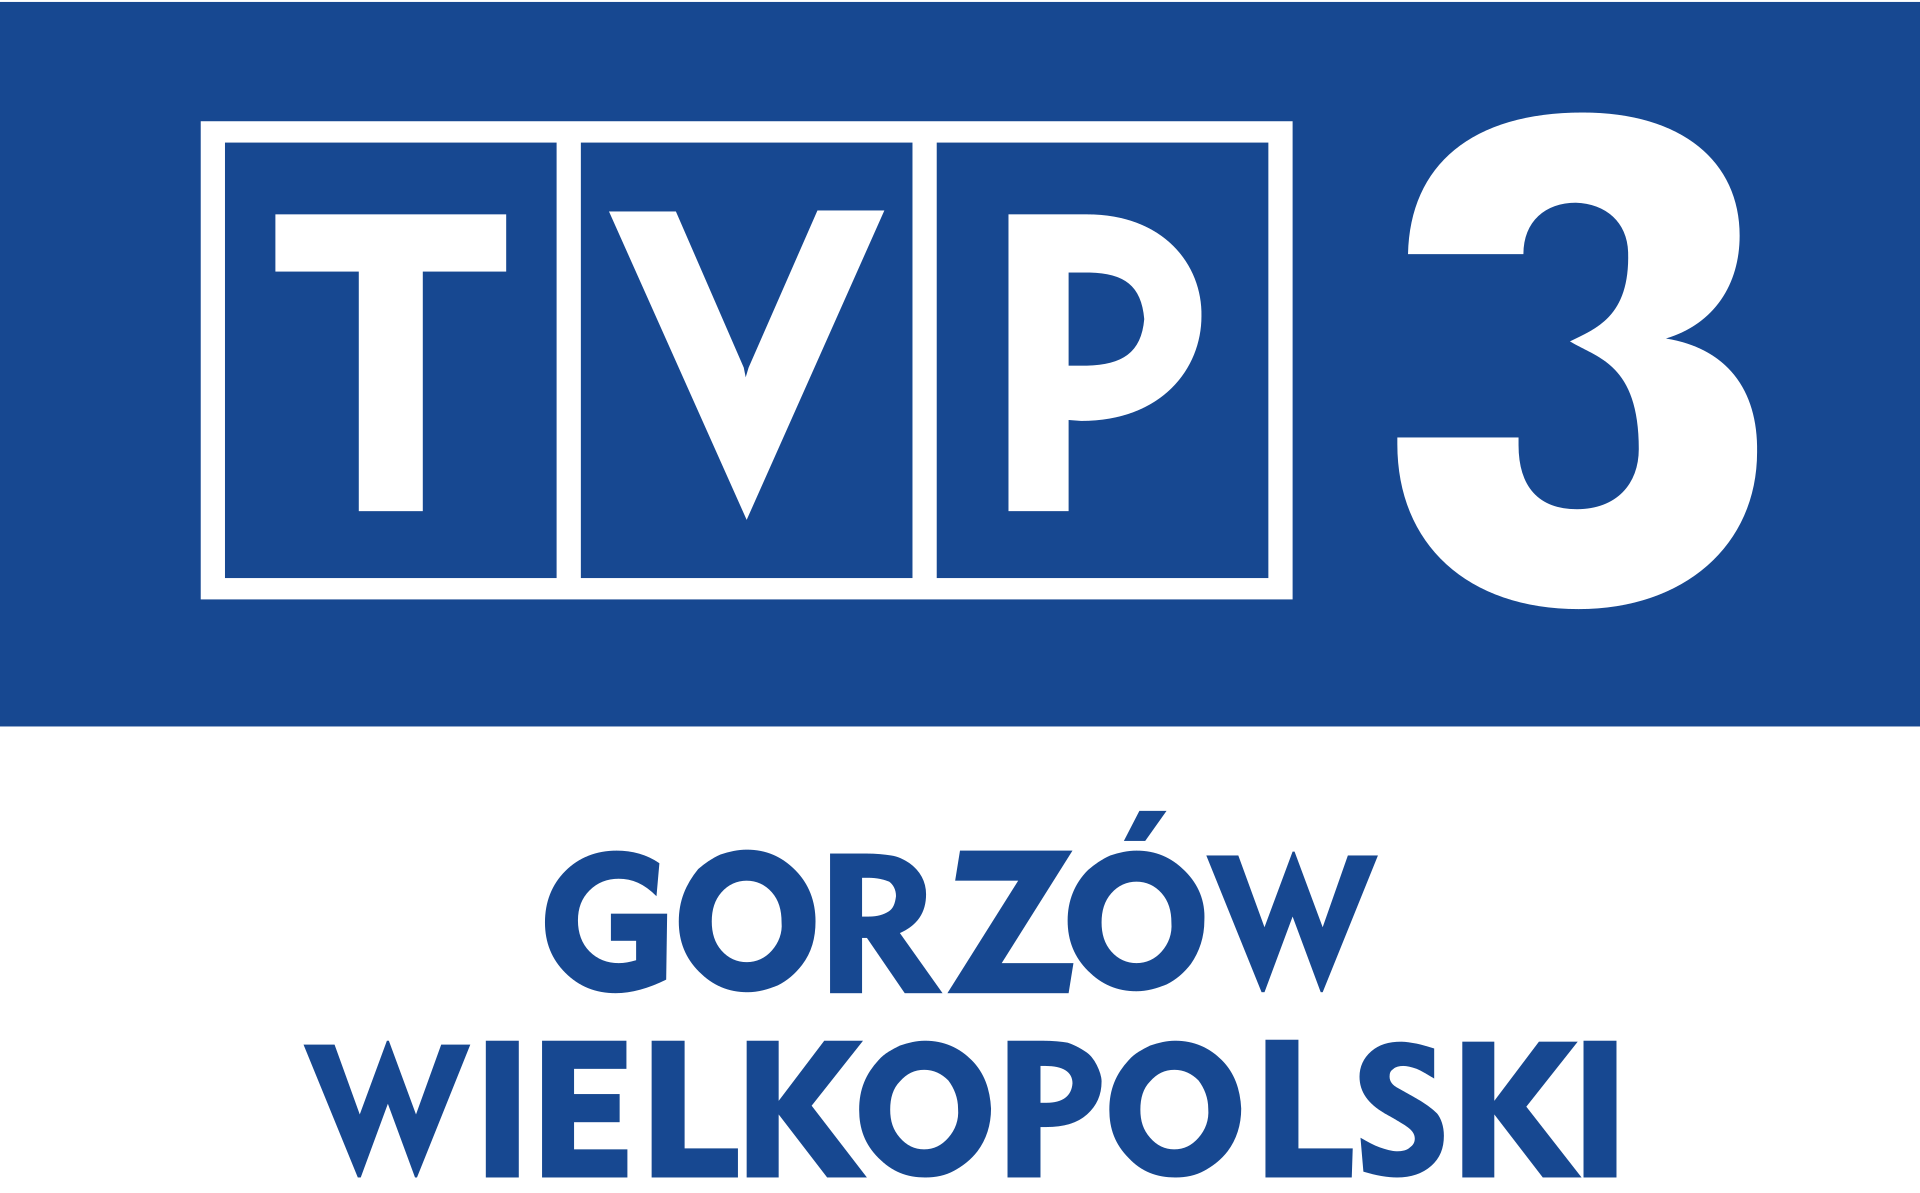 TVP3 Gorzow